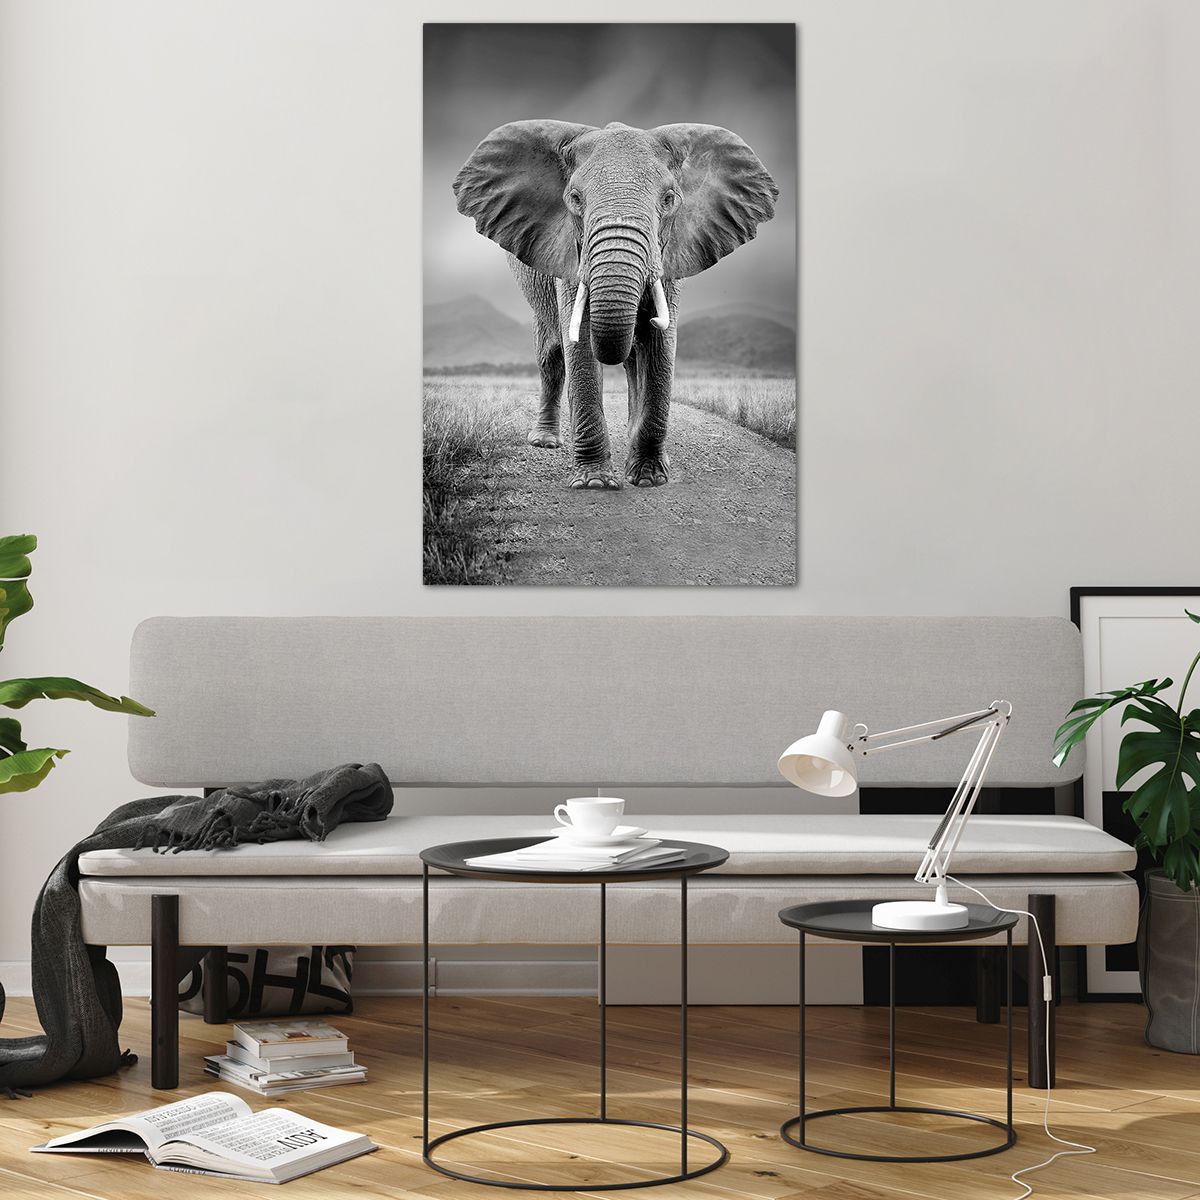 Bilder auf glas Elefant, Bilder auf glas Tiere, Bilder auf glas Landschaft, Bilder auf glas Natur, Bilder auf glas Afrika